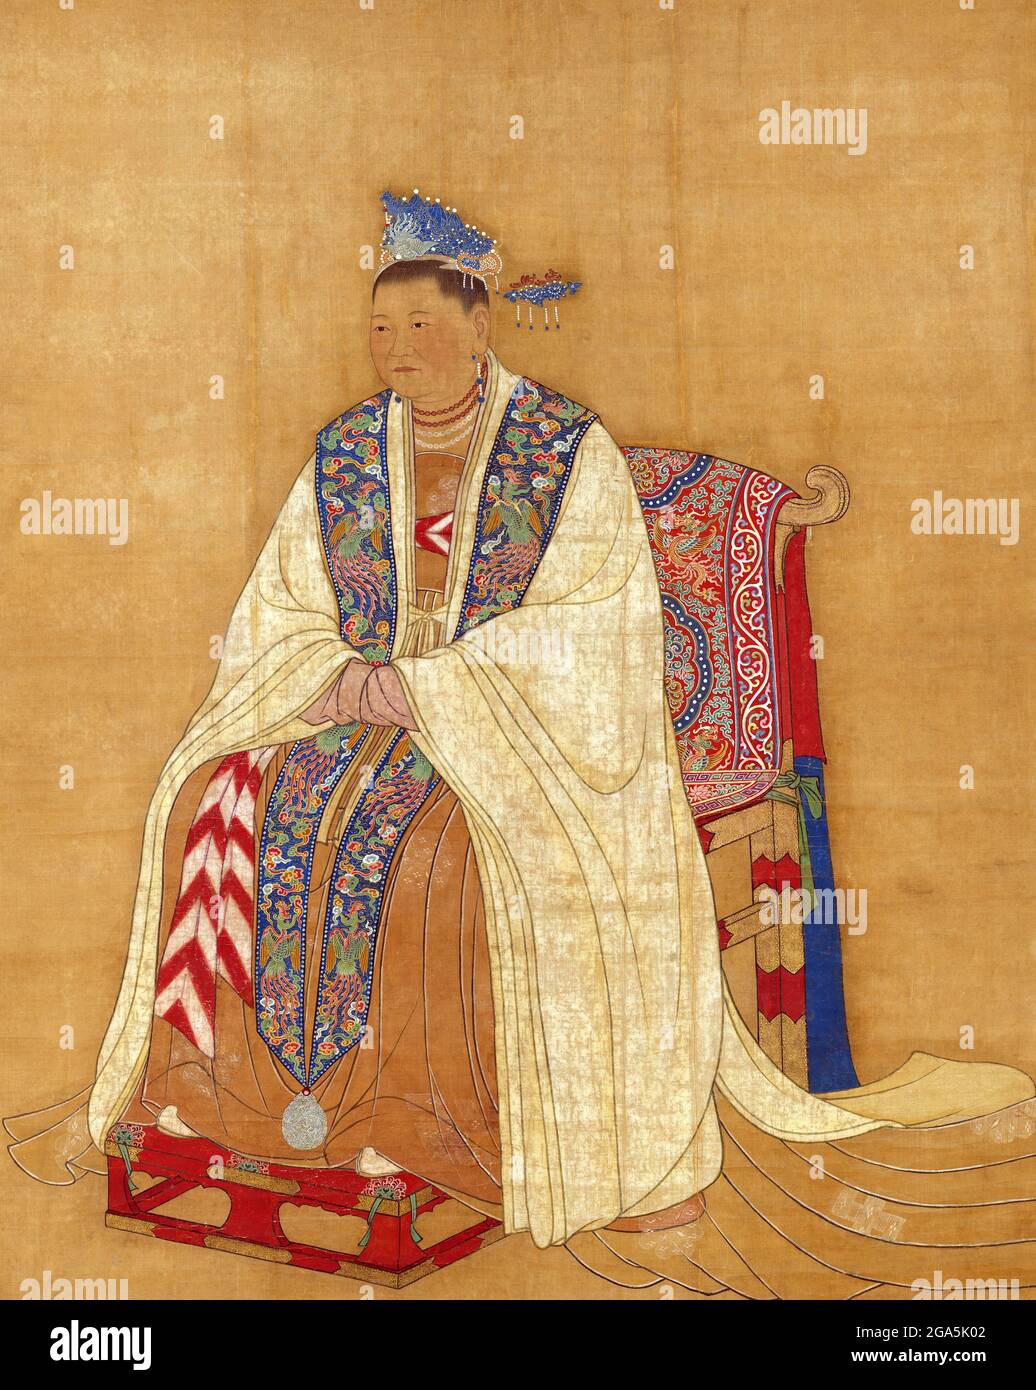 Chine : impératrice Dowager Zhaoxian (902 - 17 juillet 961), mère des deux premiers empereurs de la chanson Taizu et Taizong. Peinture à défilement suspendu, Song Dynasty (960-1279). Lady du, officiellement connue sous le nom de Zhaoxian, était une femme de la dynastie Song. Elle était l'épouse du général Zhao Hongyin et mère des deux premiers empereurs de la chanson Taizu et Taizong. L'empereur Taizong a revendiqué la légitimité du trône par son apparente volonté, prétendument scellé dans une étagère dorée à sa mort, bien que de nombreux historiens croient qu'il a fabriqué cela. Banque D'Images